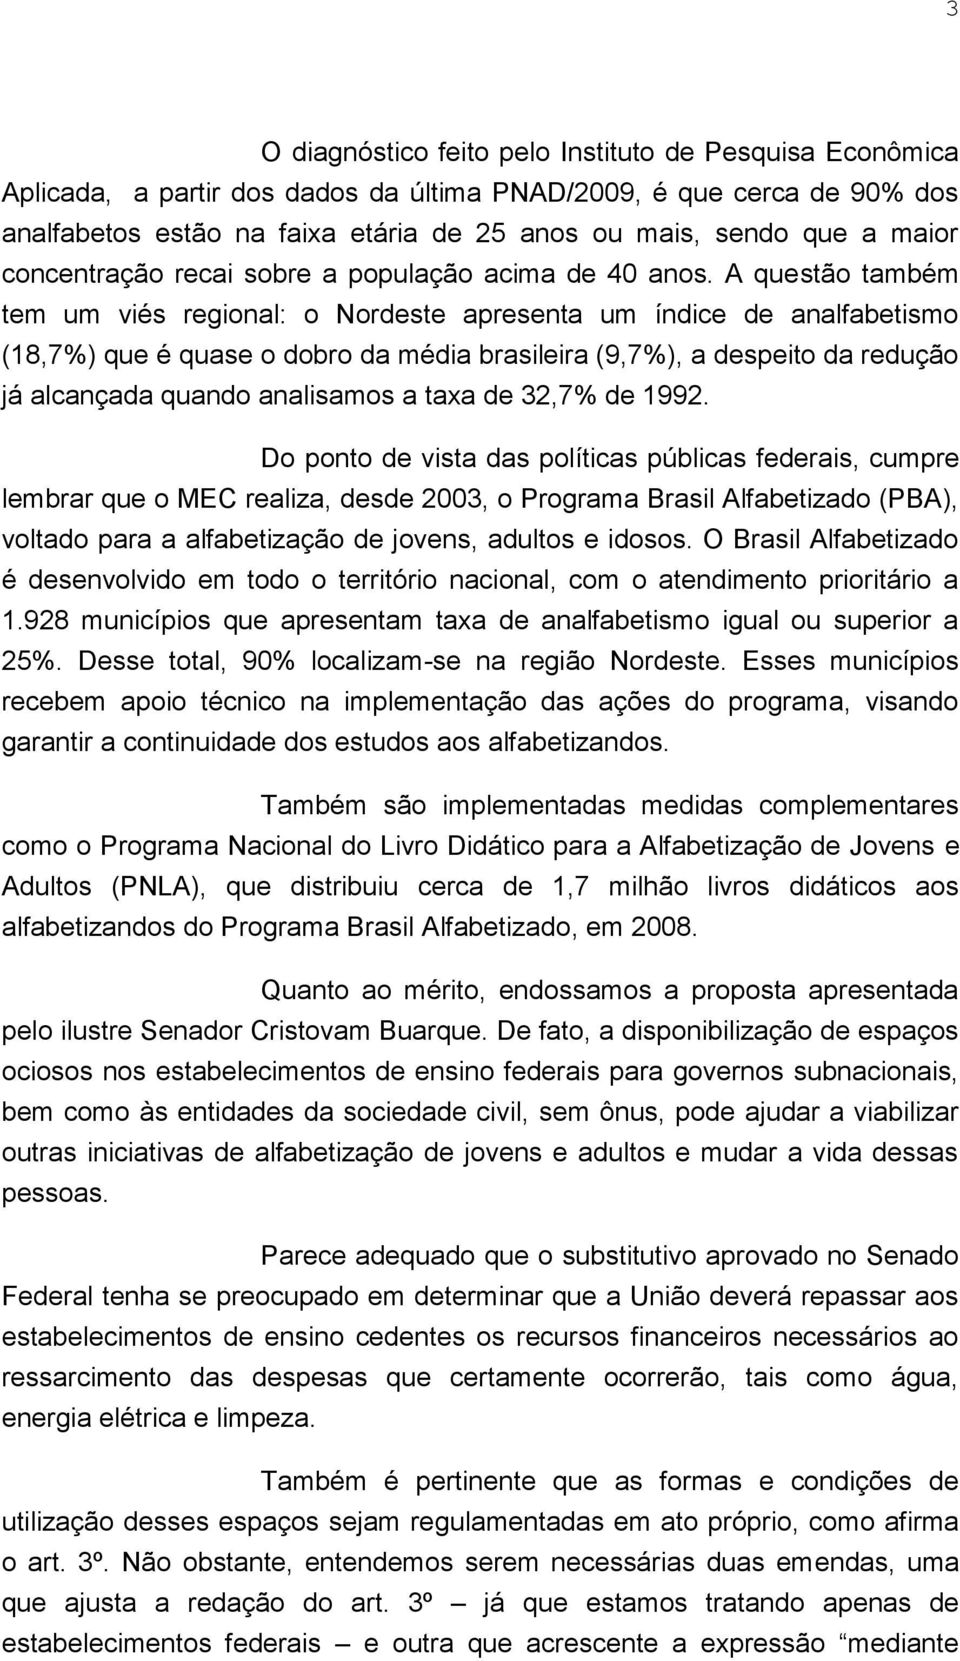 A questão também tem um viés regional: o Nordeste apresenta um índice de analfabetismo (18,7%) que é quase o dobro da média brasileira (9,7%), a despeito da redução já alcançada quando analisamos a